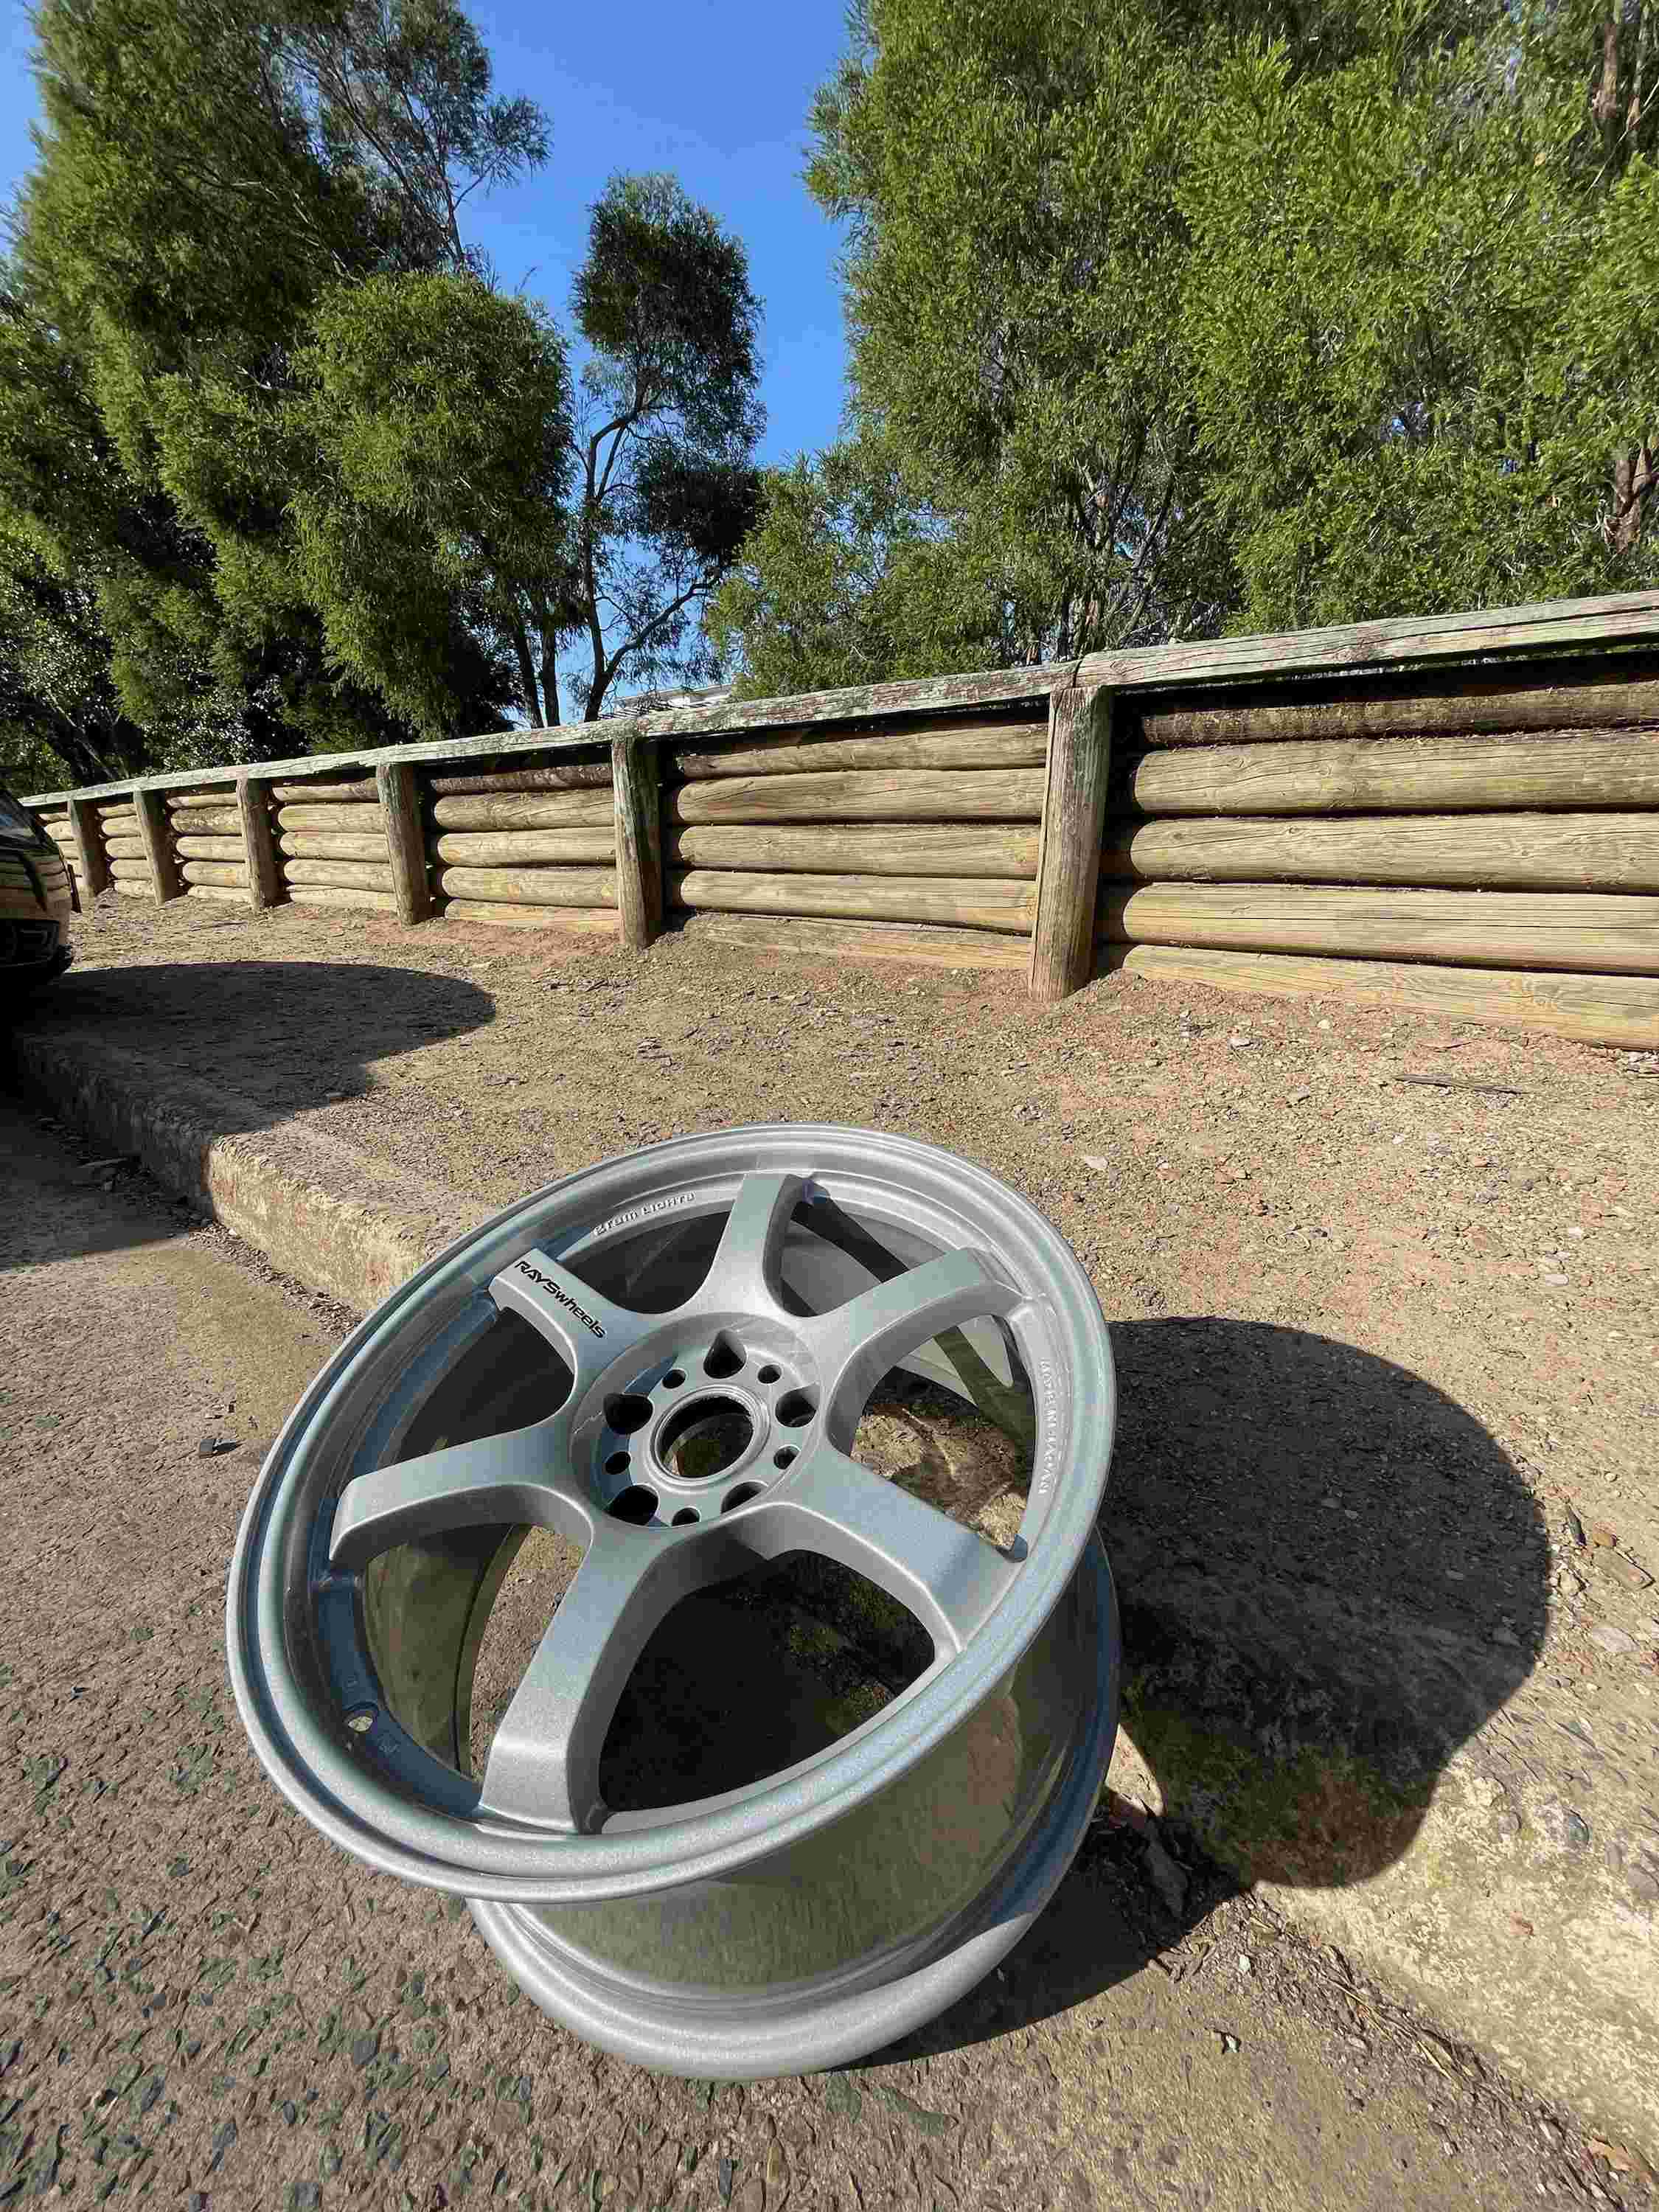 Sydney powder coating of car wheels